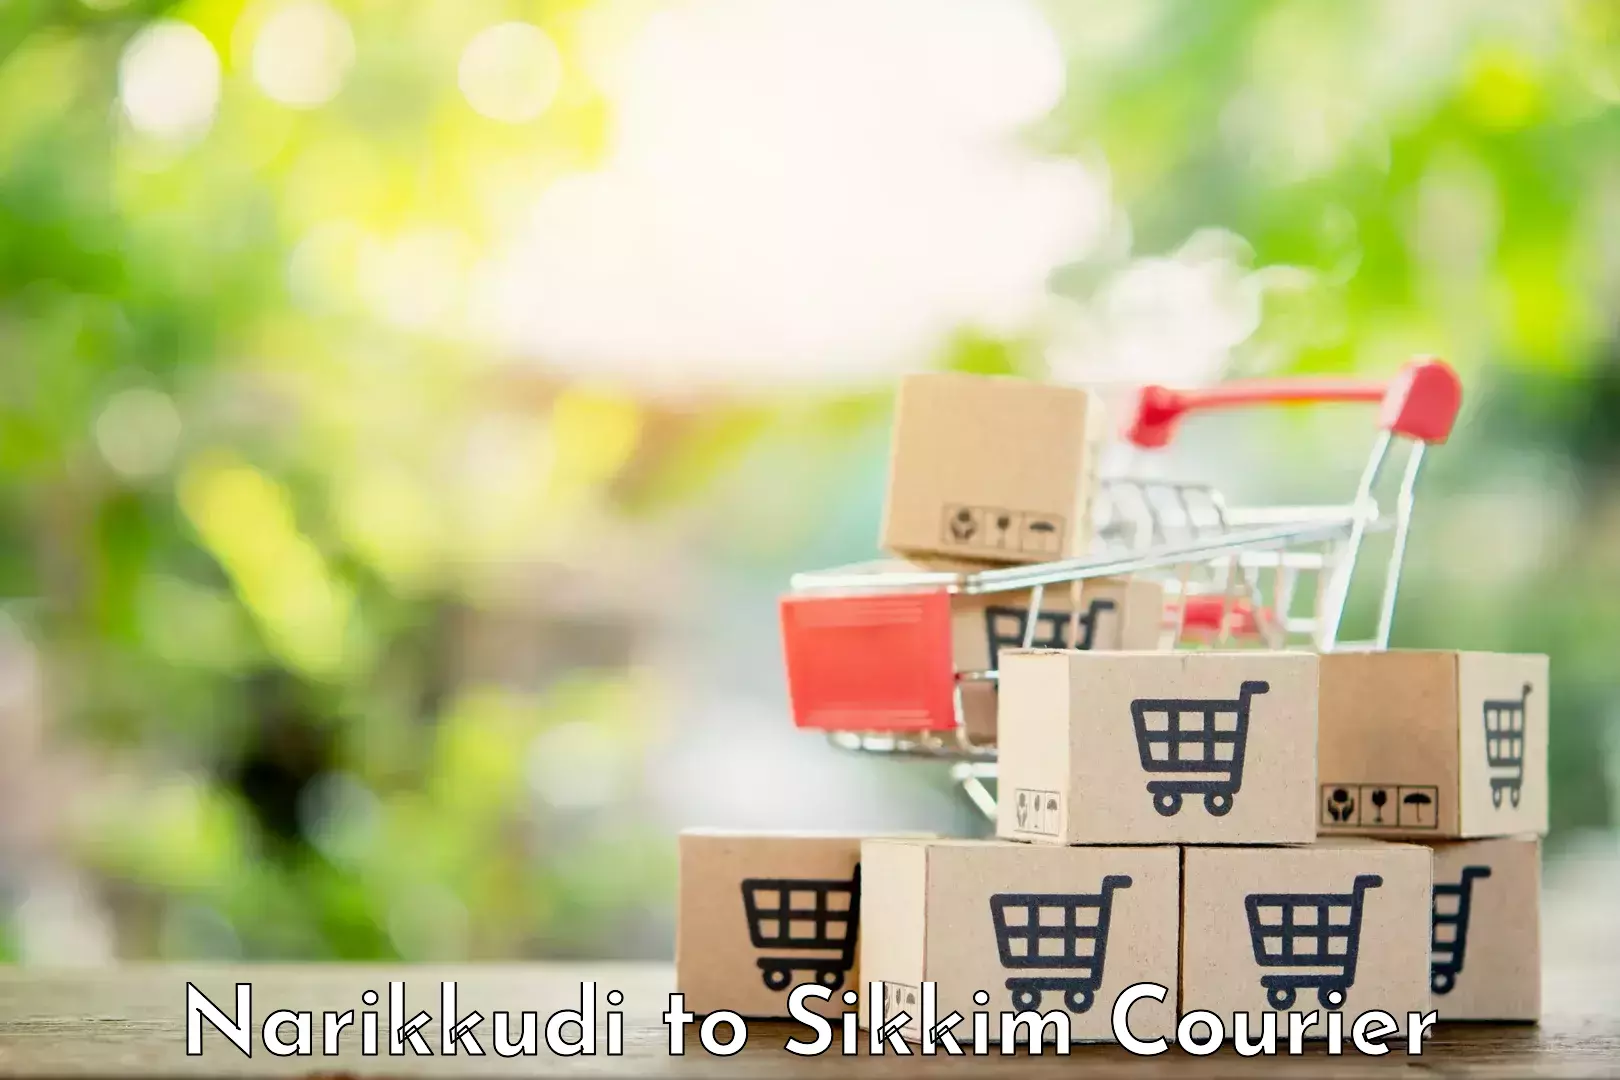 Premium courier solutions in Narikkudi to Singtam